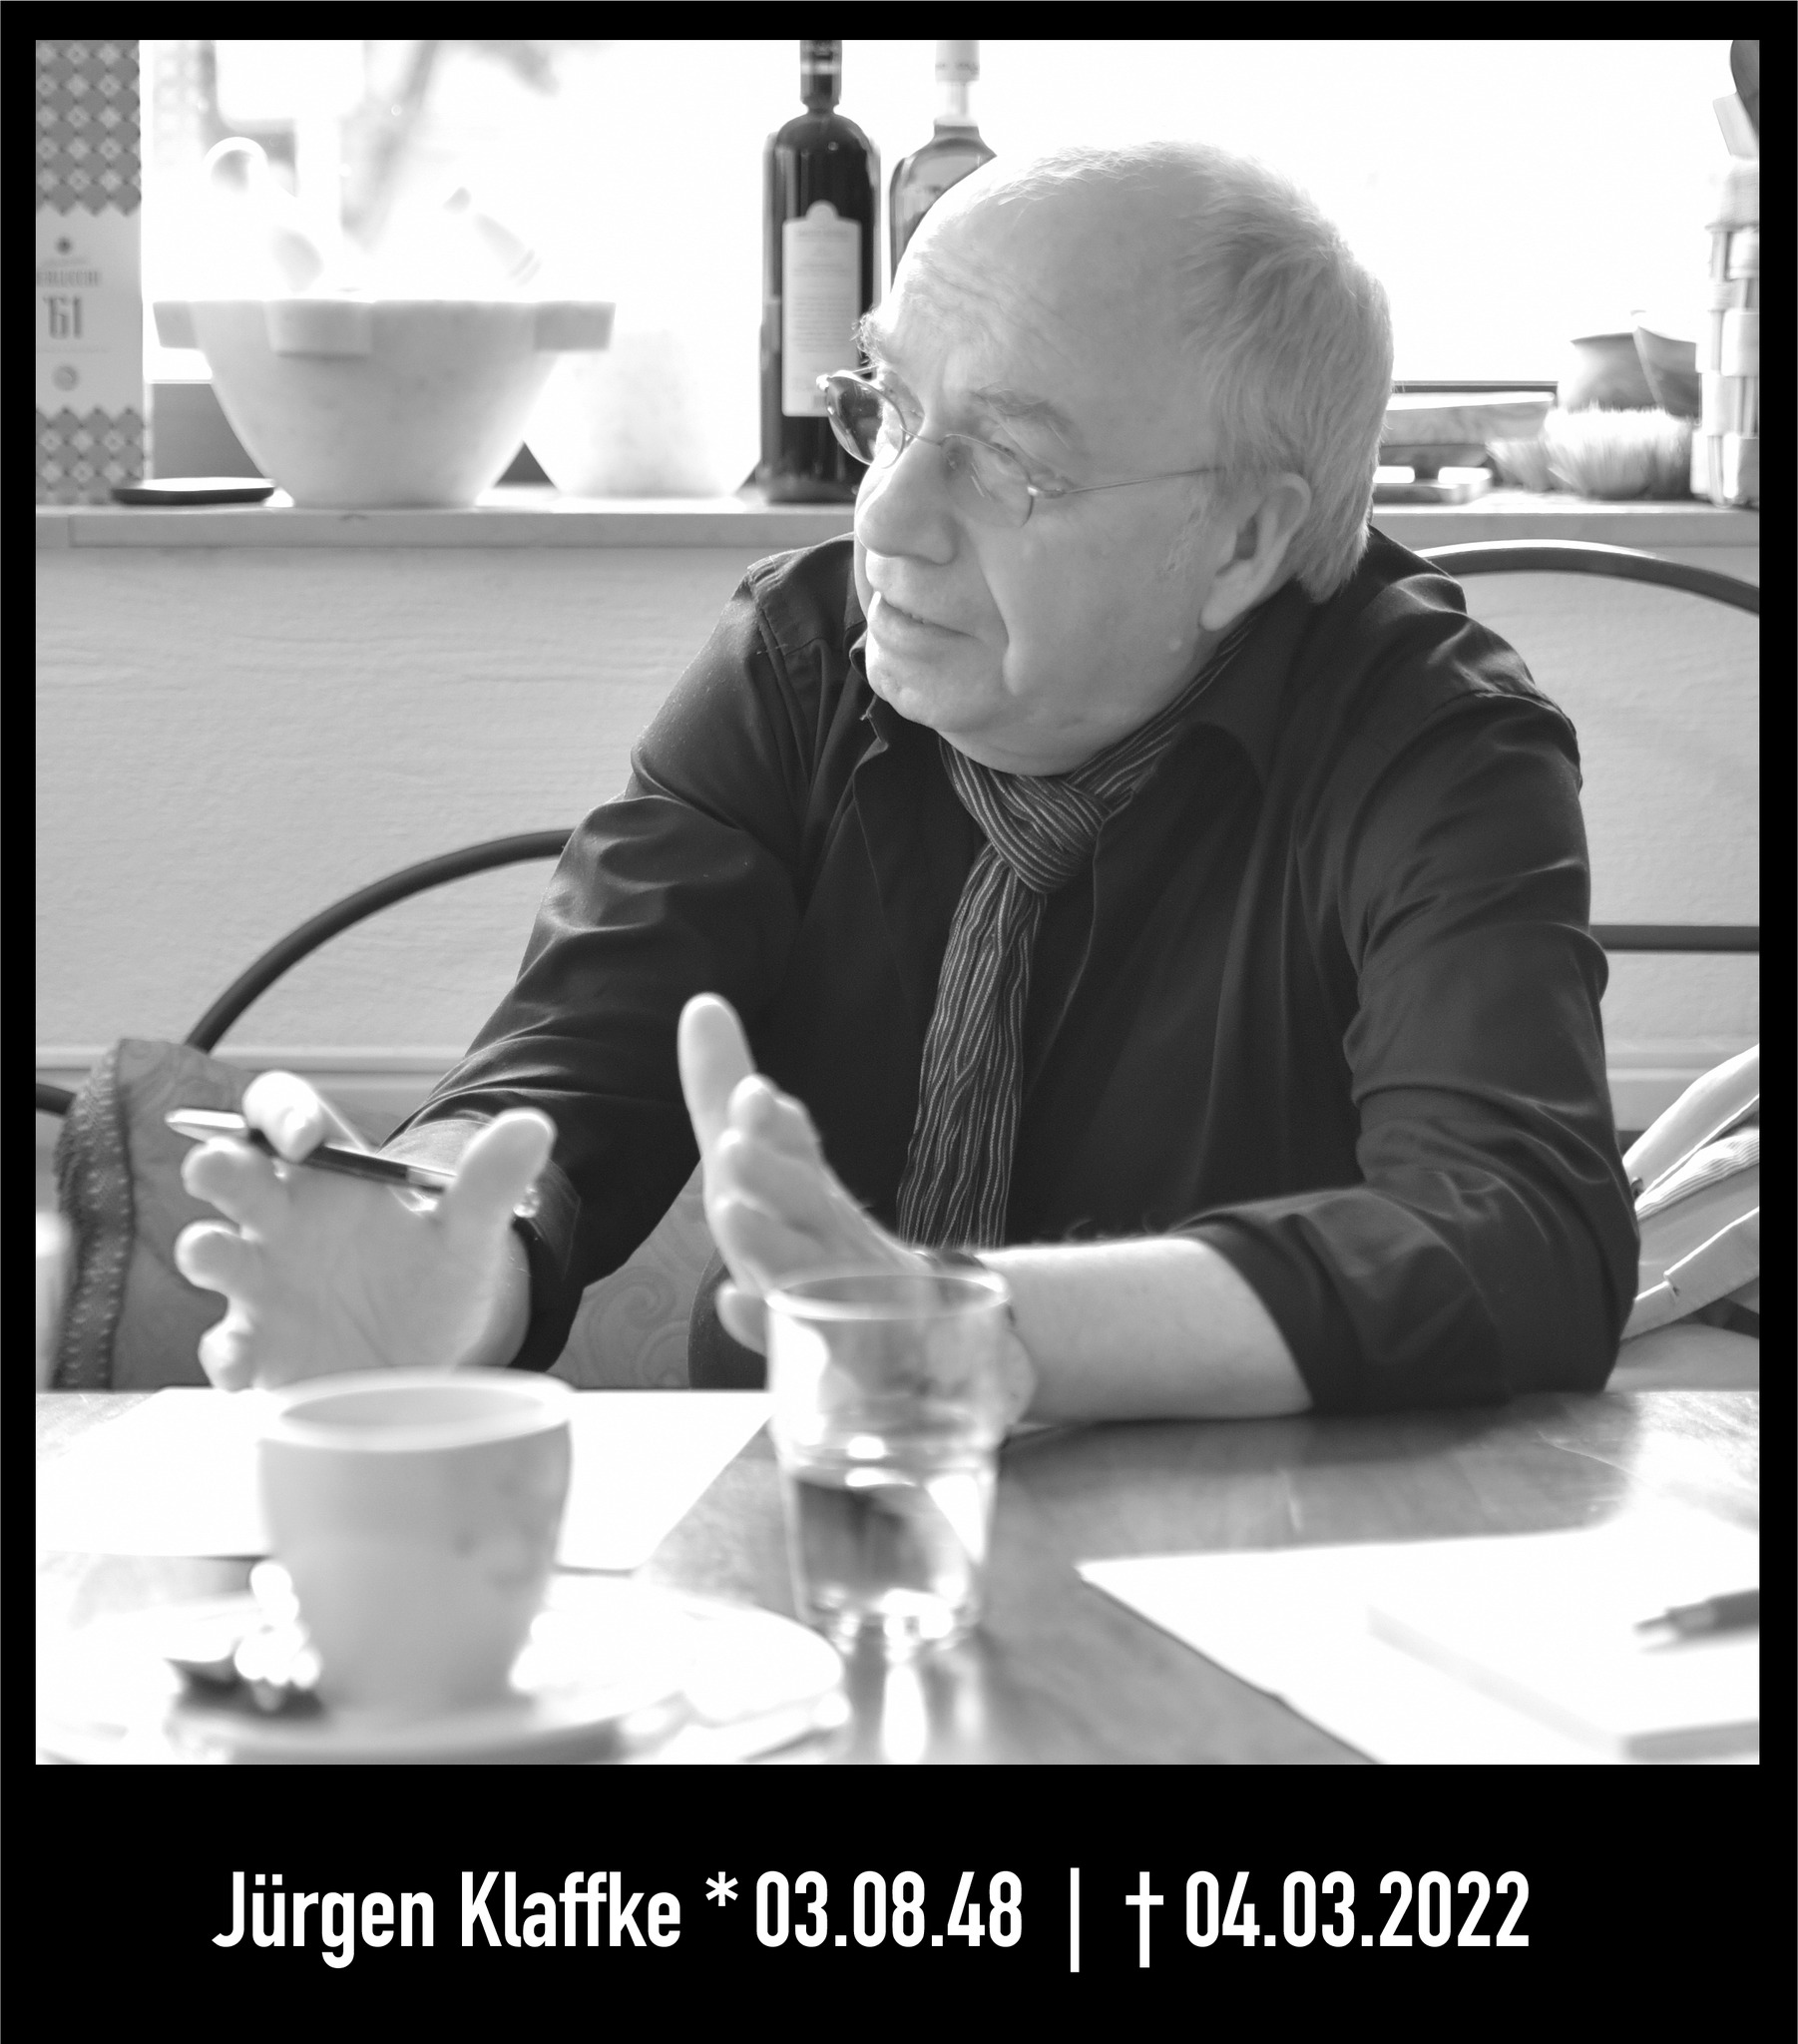 RIP - Jürgen Klaffke